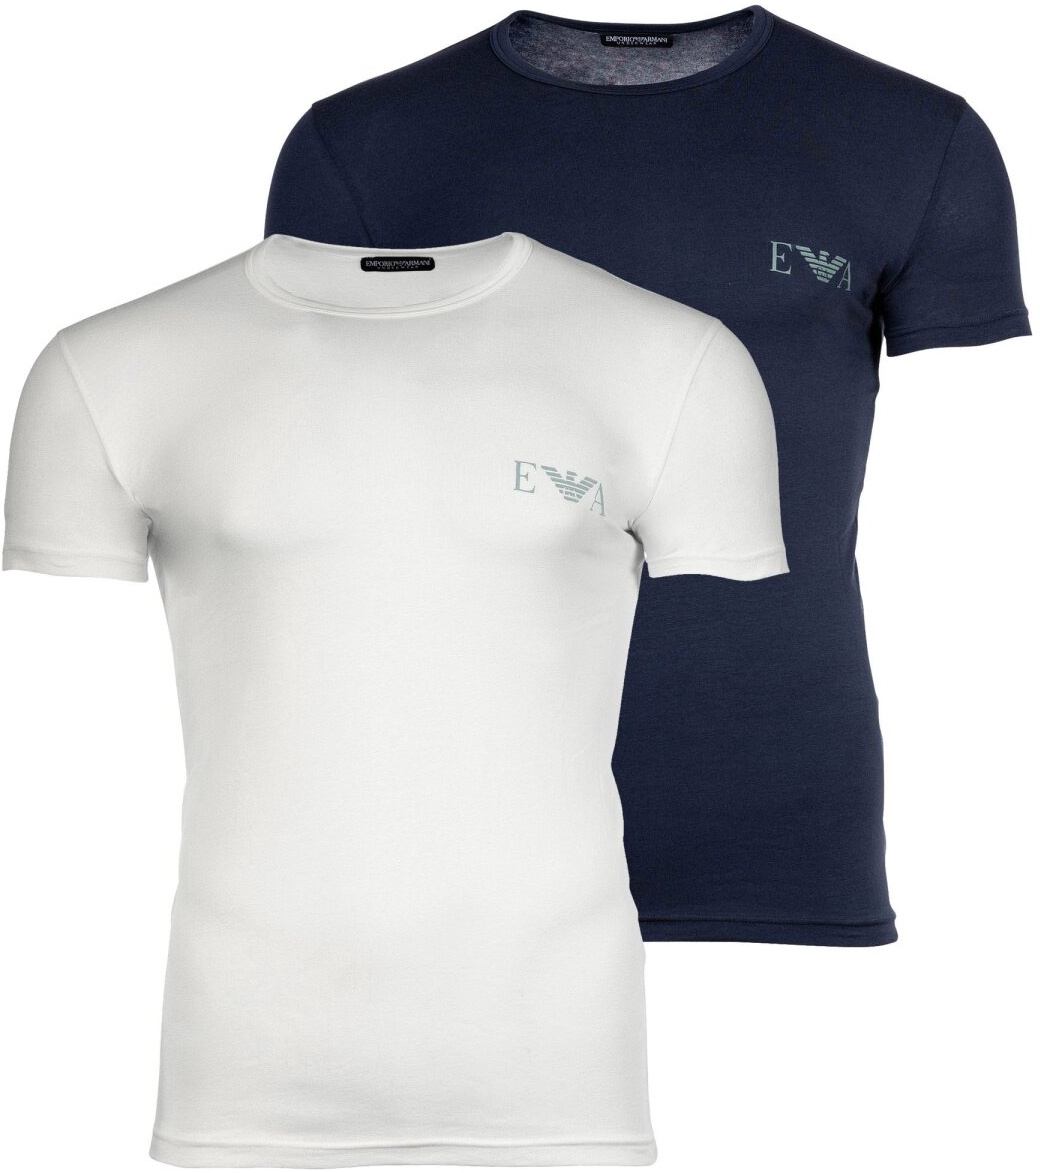 EMPORIO ARMANI Herren T-Shirt, 2er Pack - BOLD MONOGRAM, Rundhals, Slim Fit, Stretch Cotton Marine/Weiß L